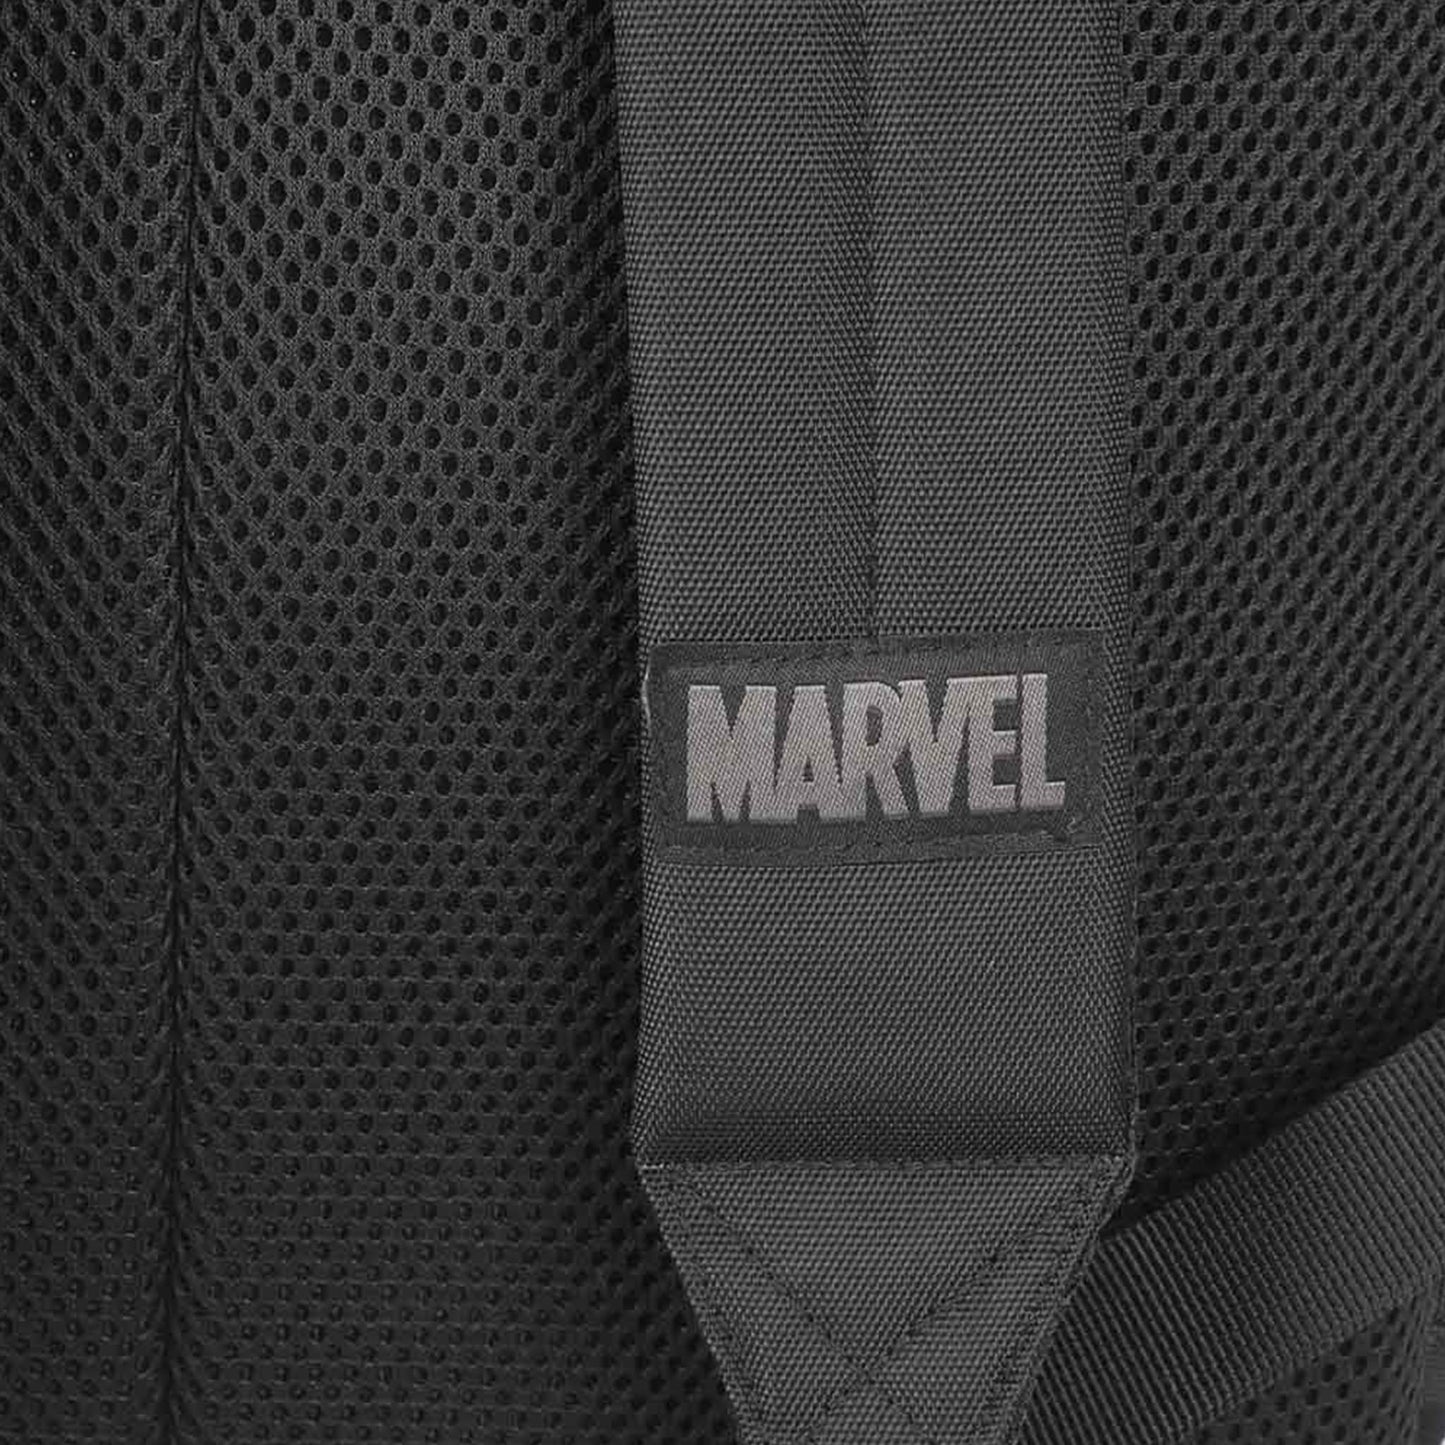 Miles Morales (Spider-Man) Marvel Reflective Print Laptop Backpack